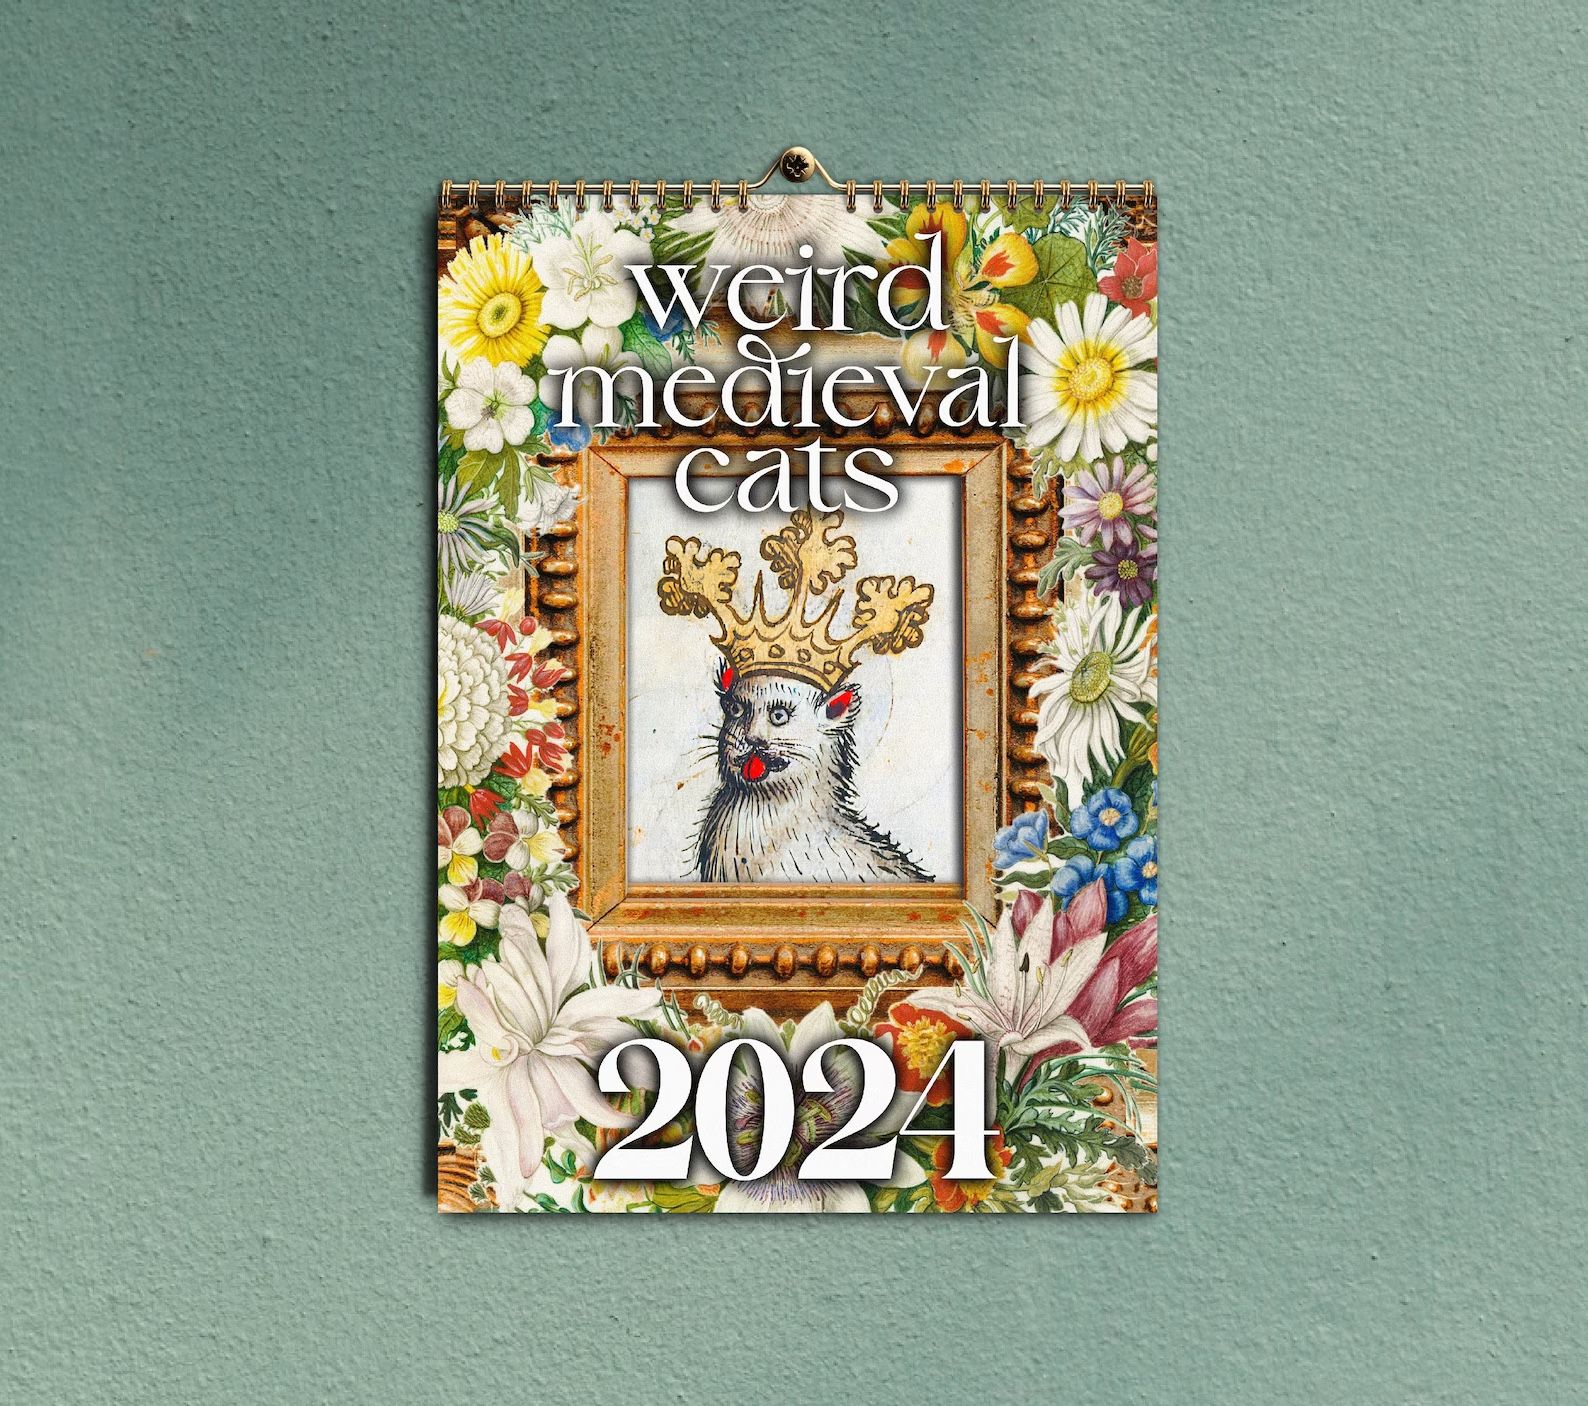 Weird Medieval Cats 2024 calendar